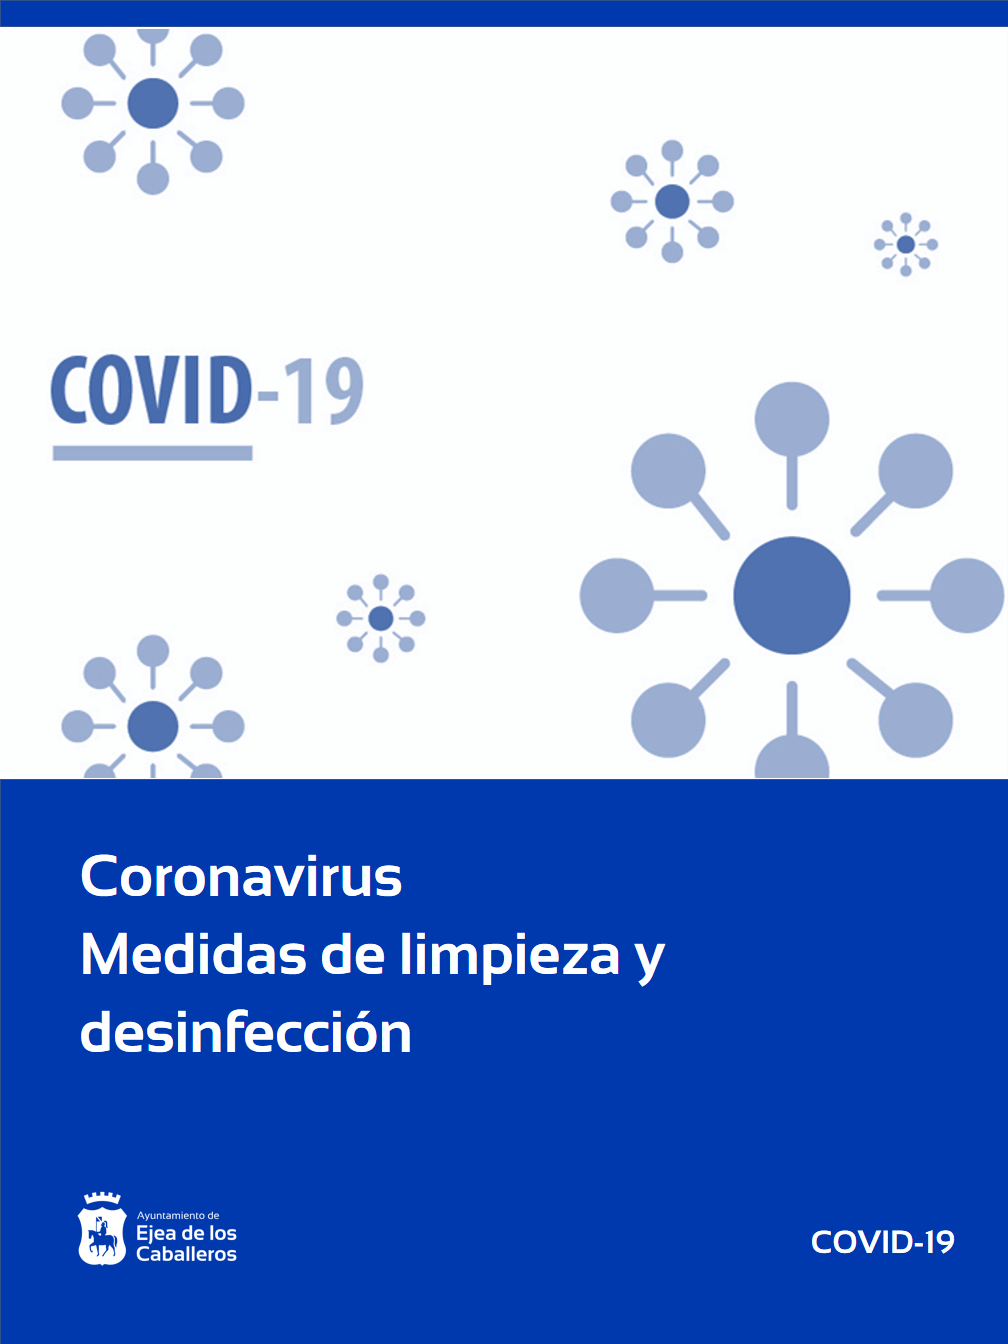 En este momento estás viendo Coronavirus-Medidas de limpieza y desinfección